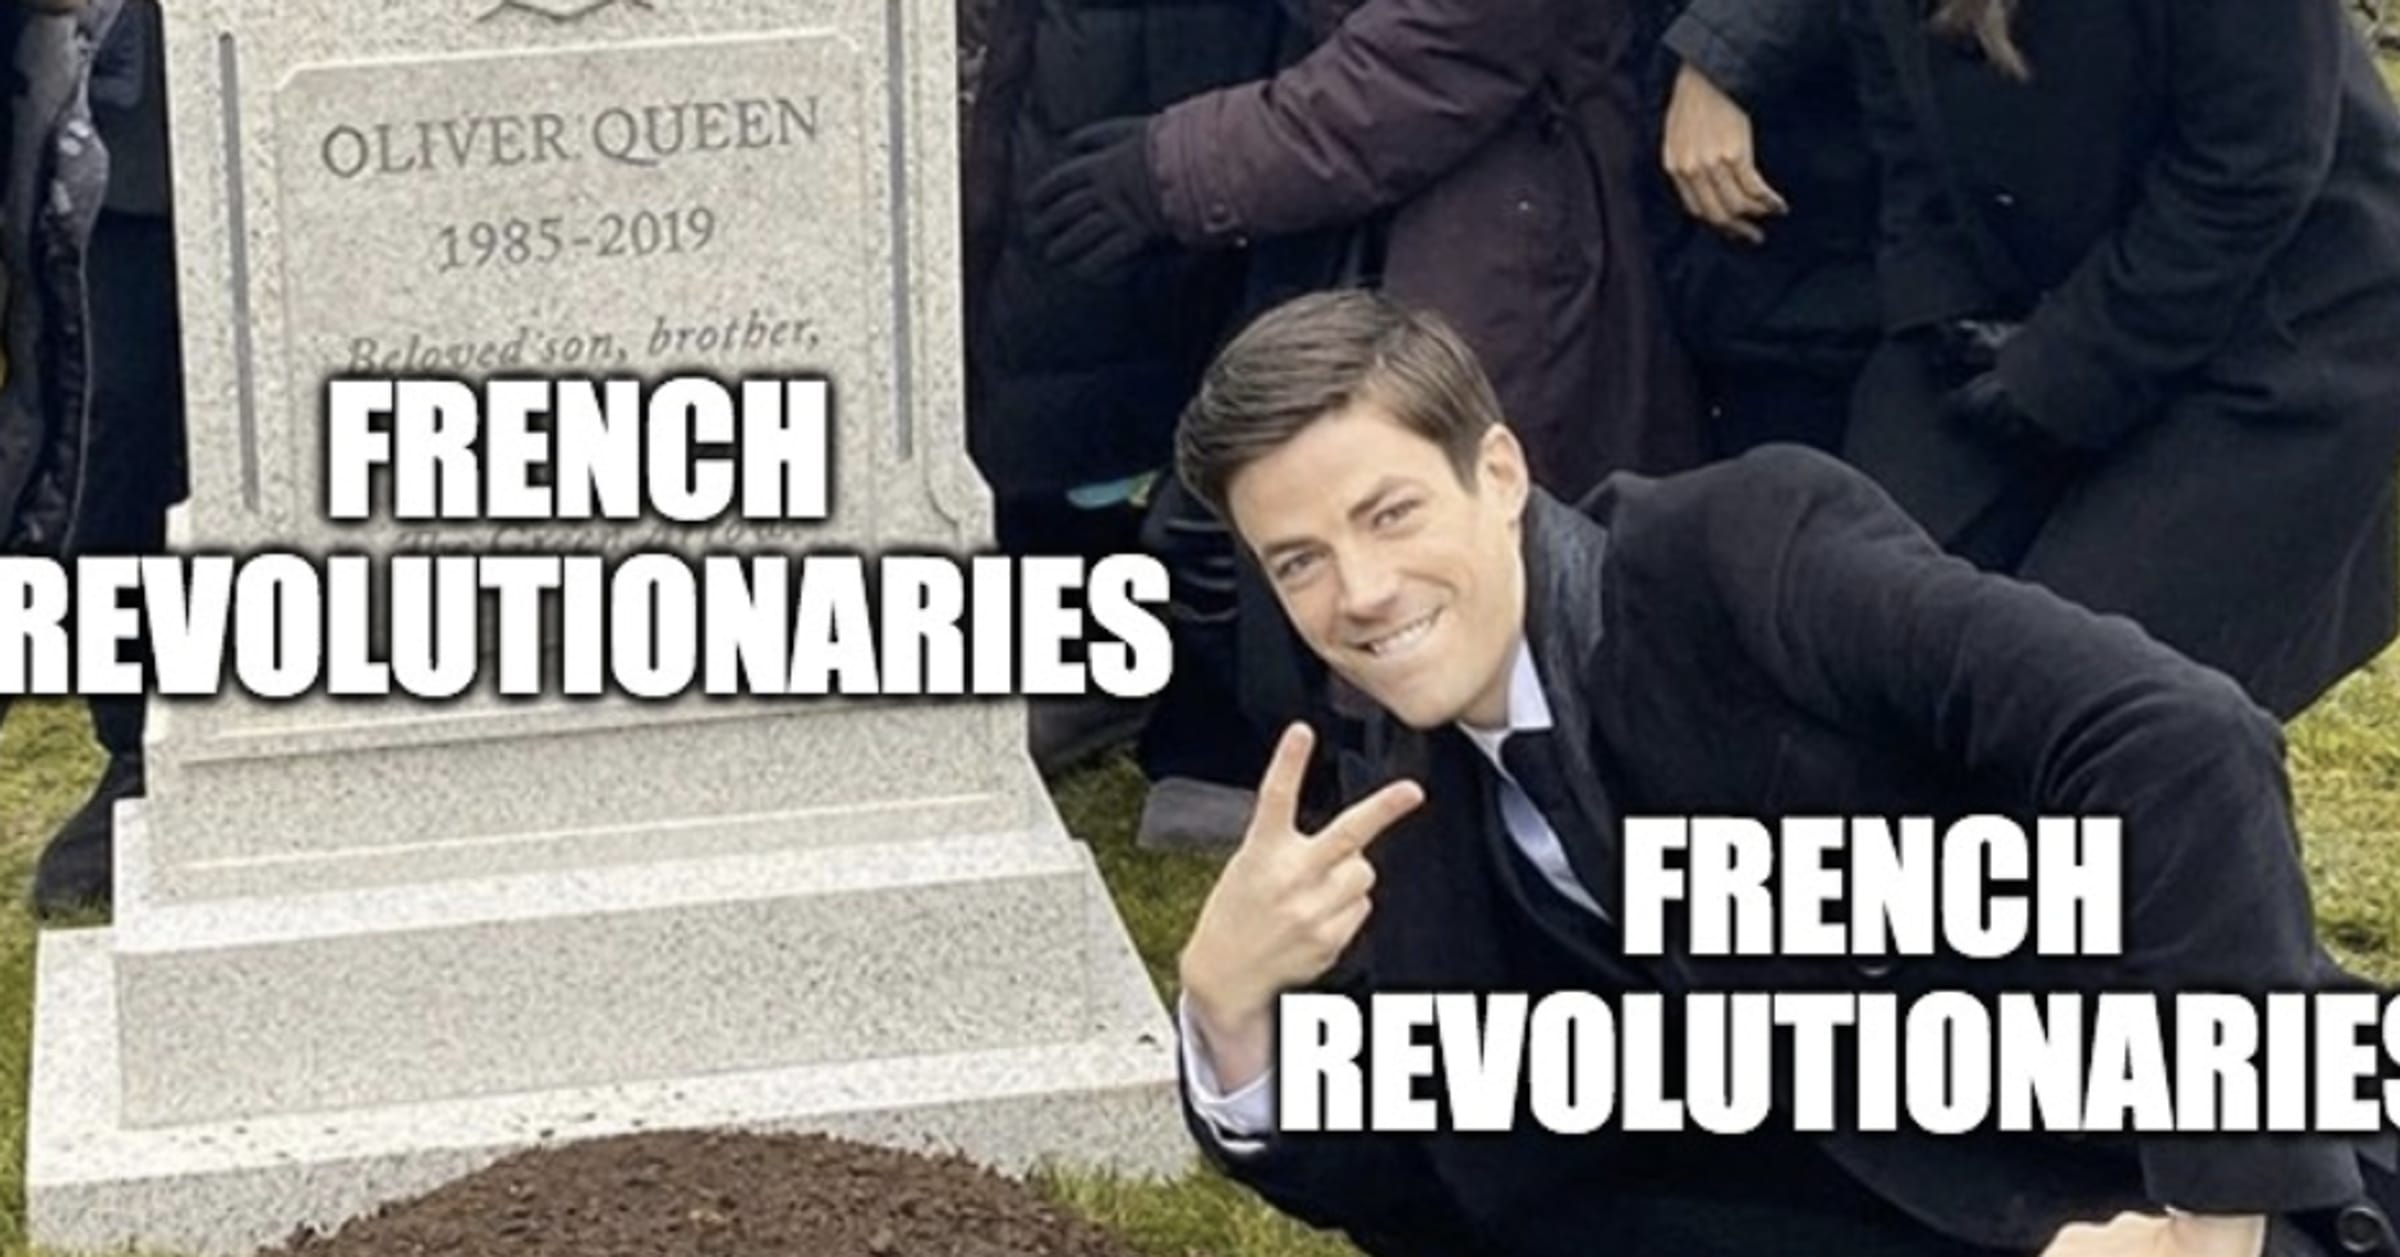 french revolution meme